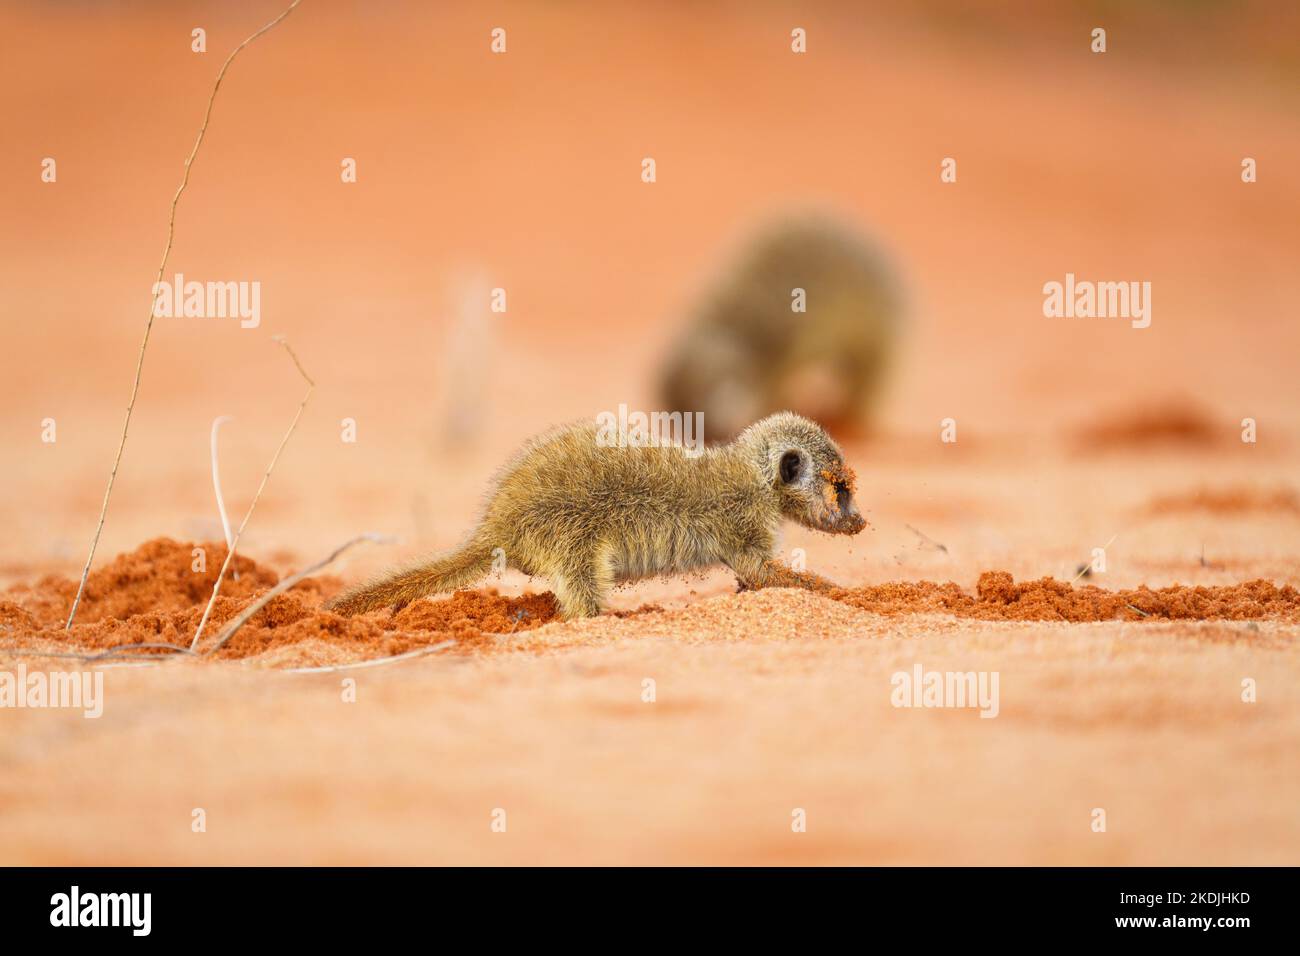 Le petit bébé de meerkat creuse pour les insectes et les créatures à manger. Nourriture recherche d'un petit animal. Parc transfrontalier Kgalagadi, Kalahari, Afrique du Sud Banque D'Images